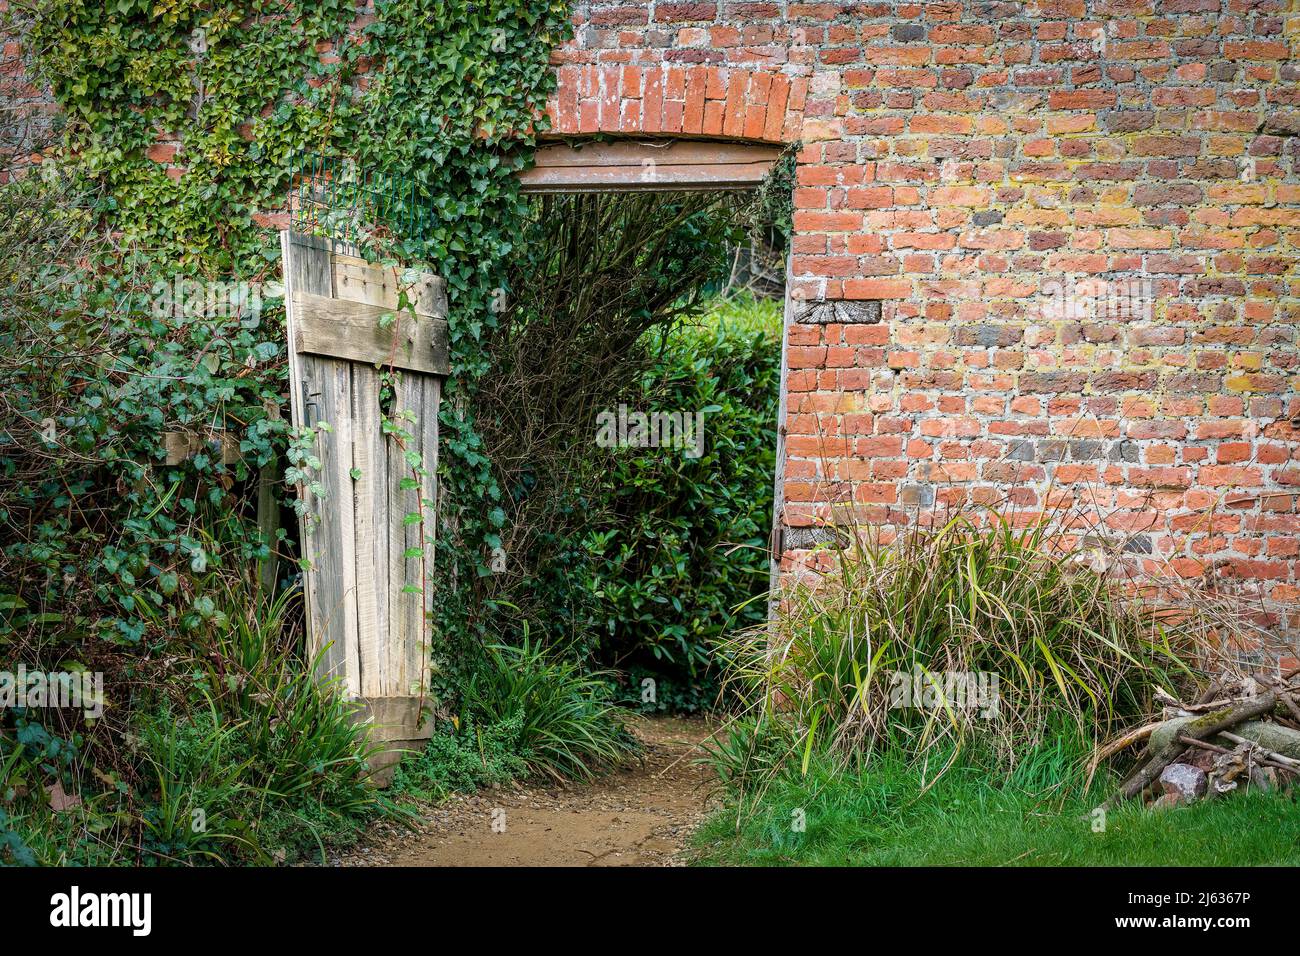 Entrance to a Walled Garden Stock Photo